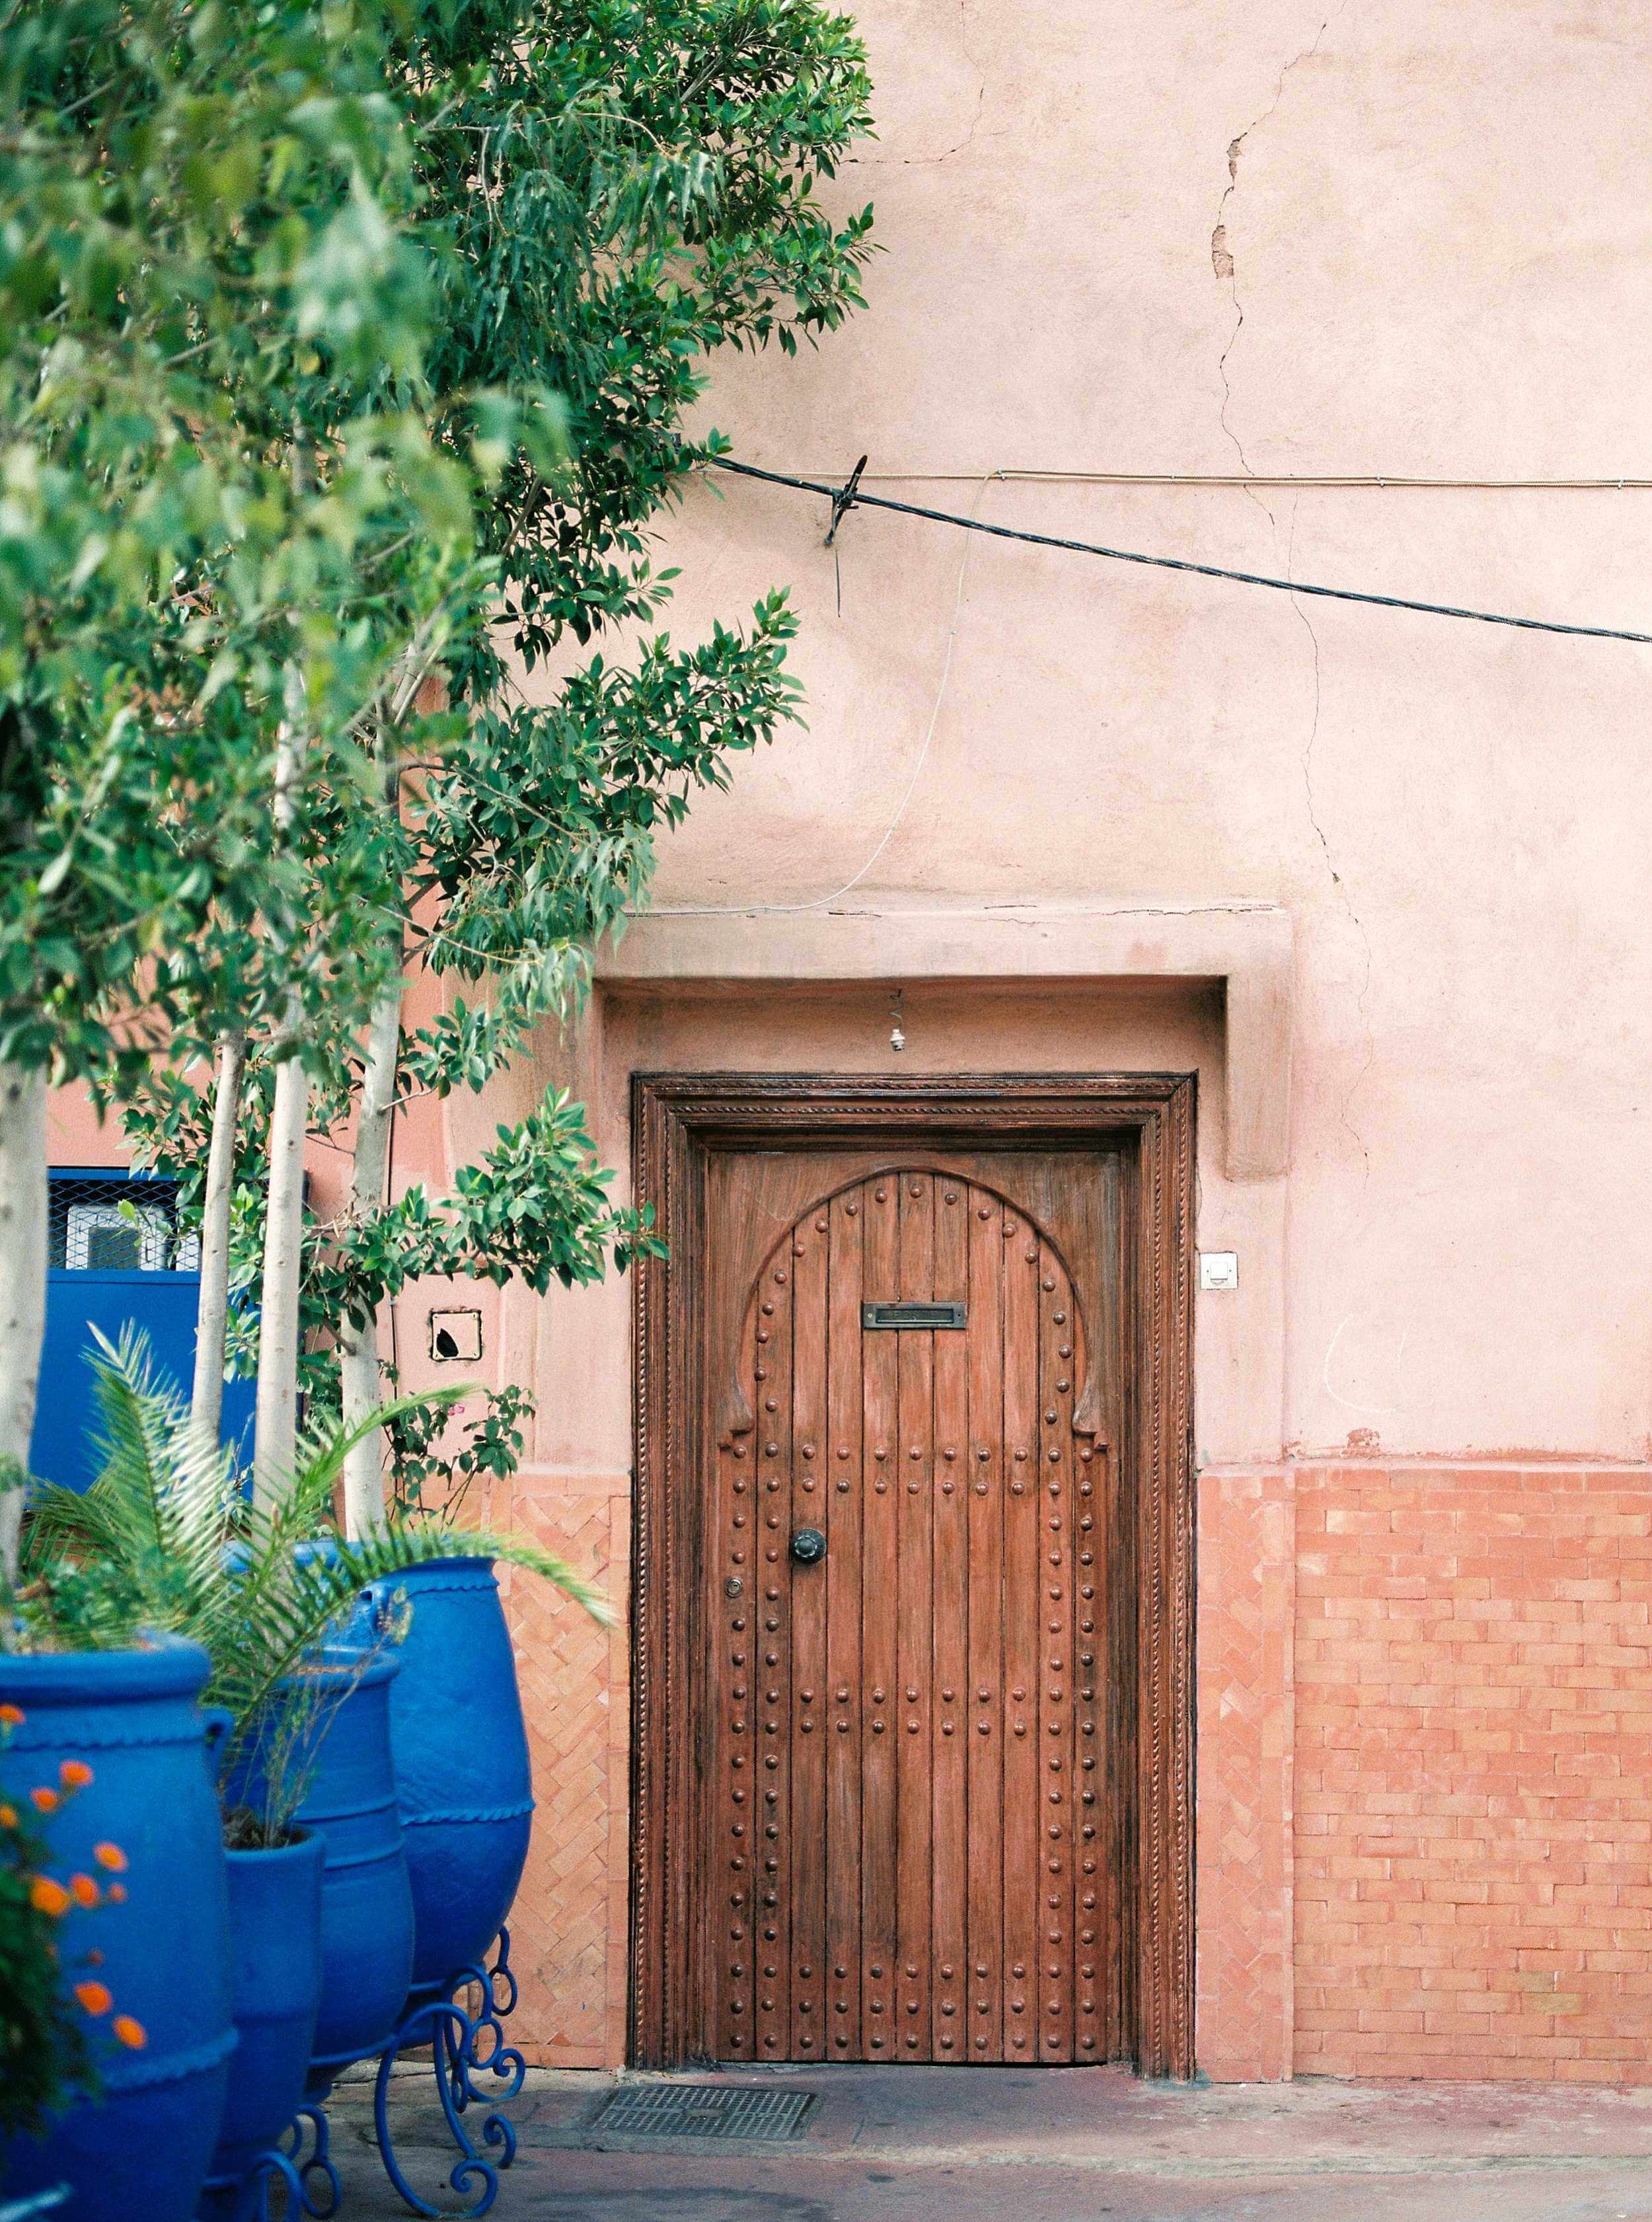 Wooden door and coral tones in the Medina of Marrakech. Wanderlust travel wall art Morocco